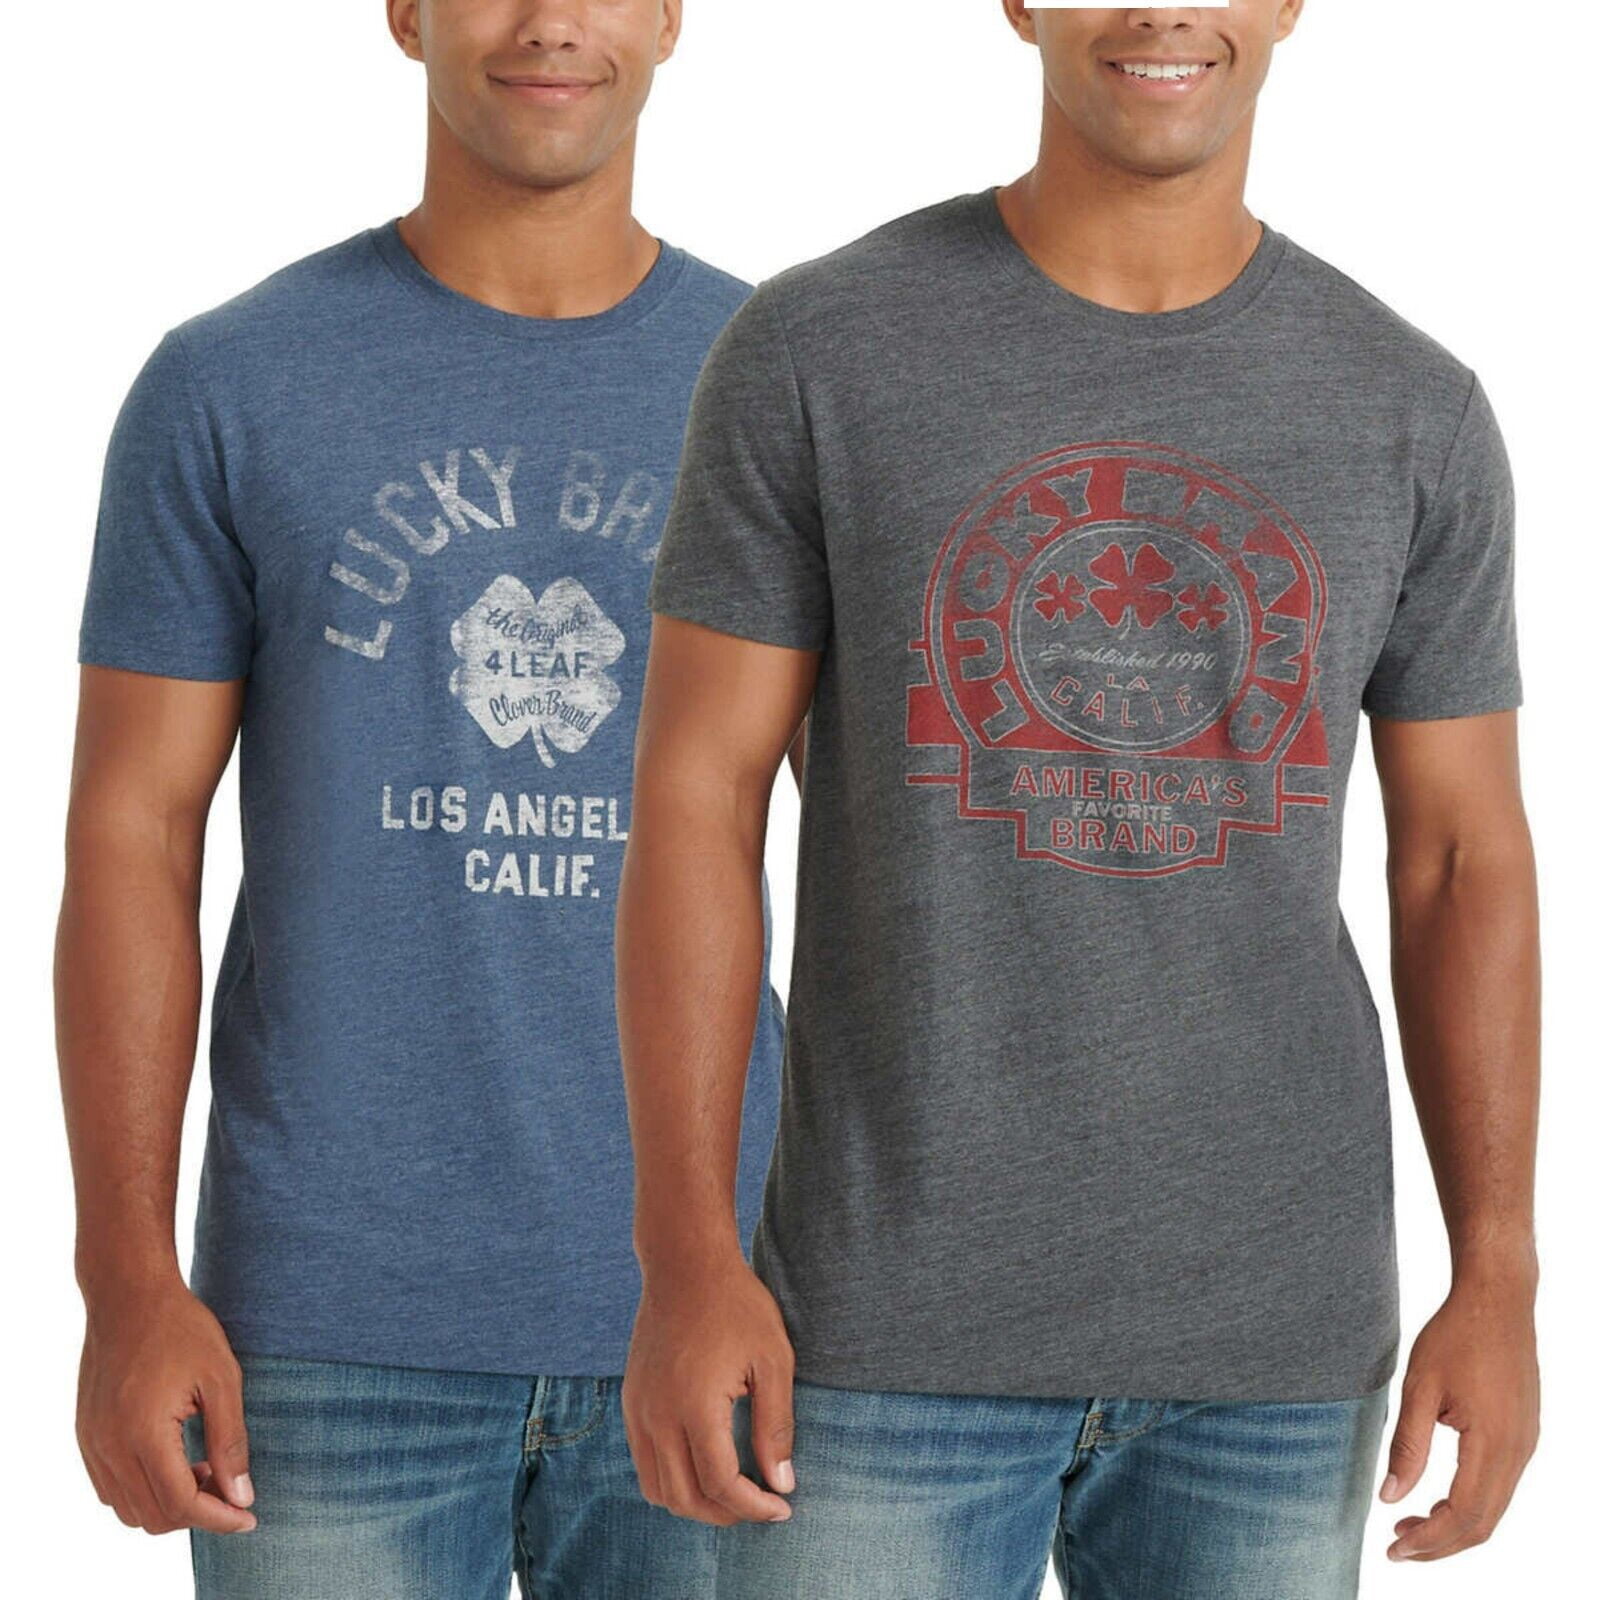 Short Lucky T-Shirt Jersey 2-Pack Soft Men\'s Cotton Tee Graphic Sleeve Logo Blend Print Brand